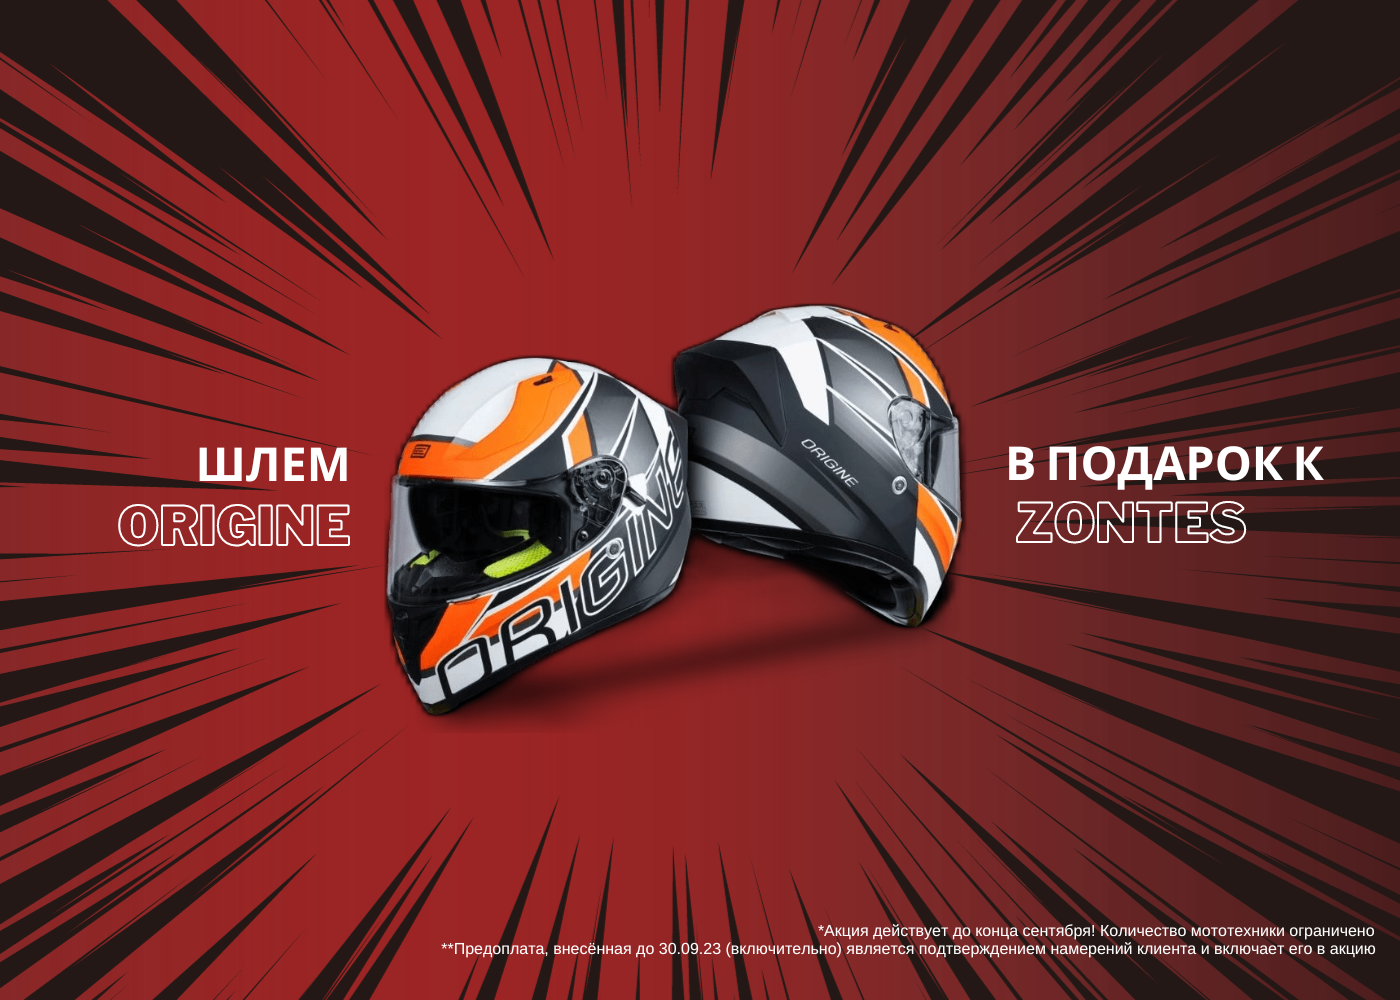 Итальянский шлем ORIGINE в подарок при покупке мотоцикла или скутера ZONTES!